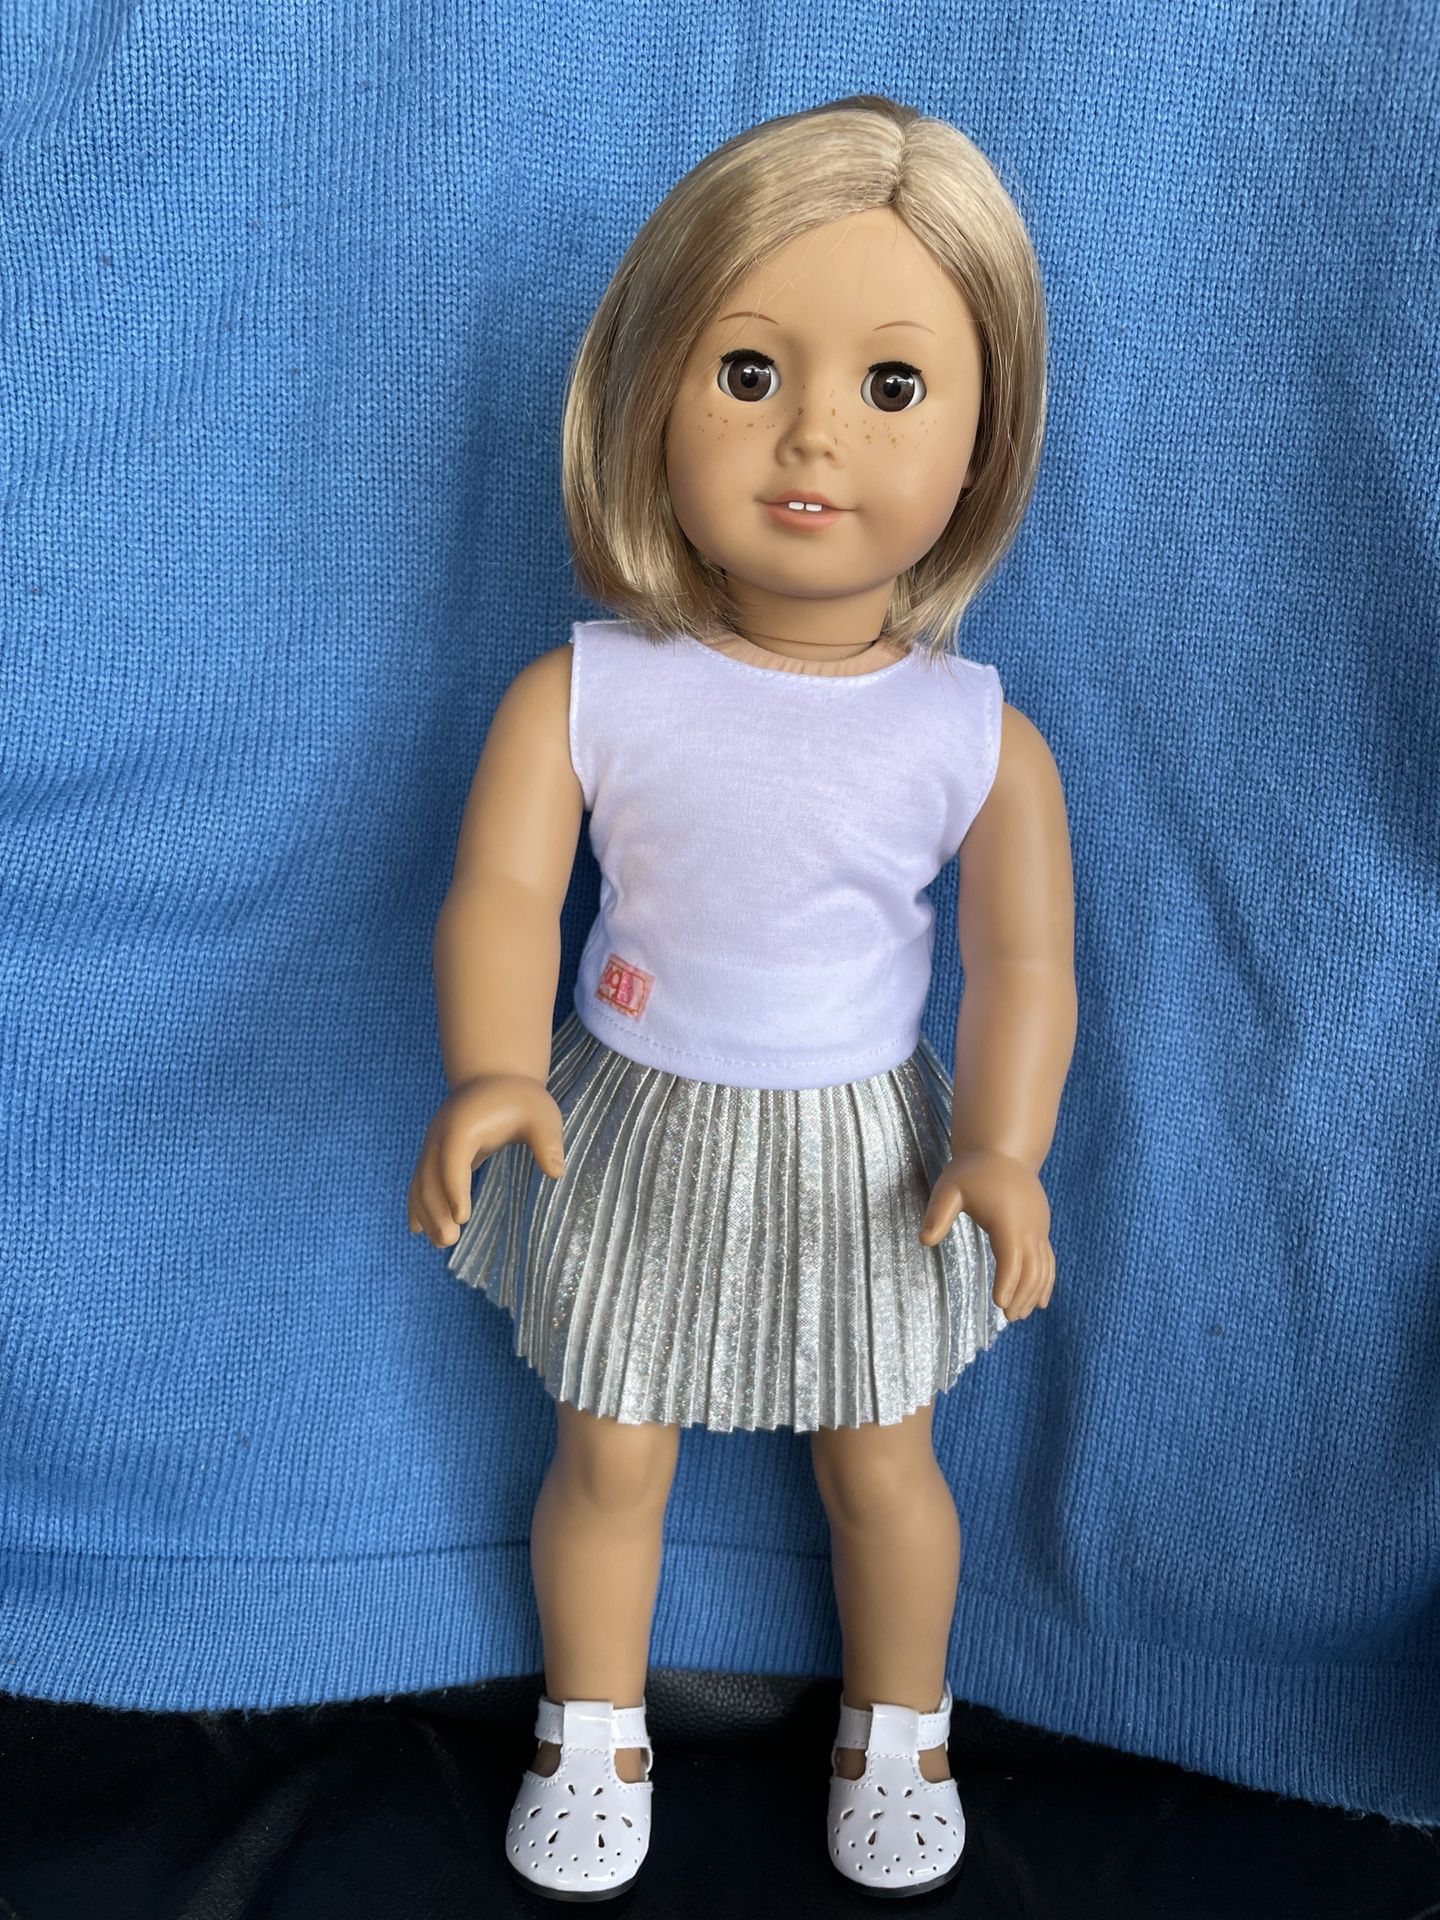 CUSTOM American Girl Doll-Brown Eyes, Short Blonde Hair, Freckles, Ear Piercing